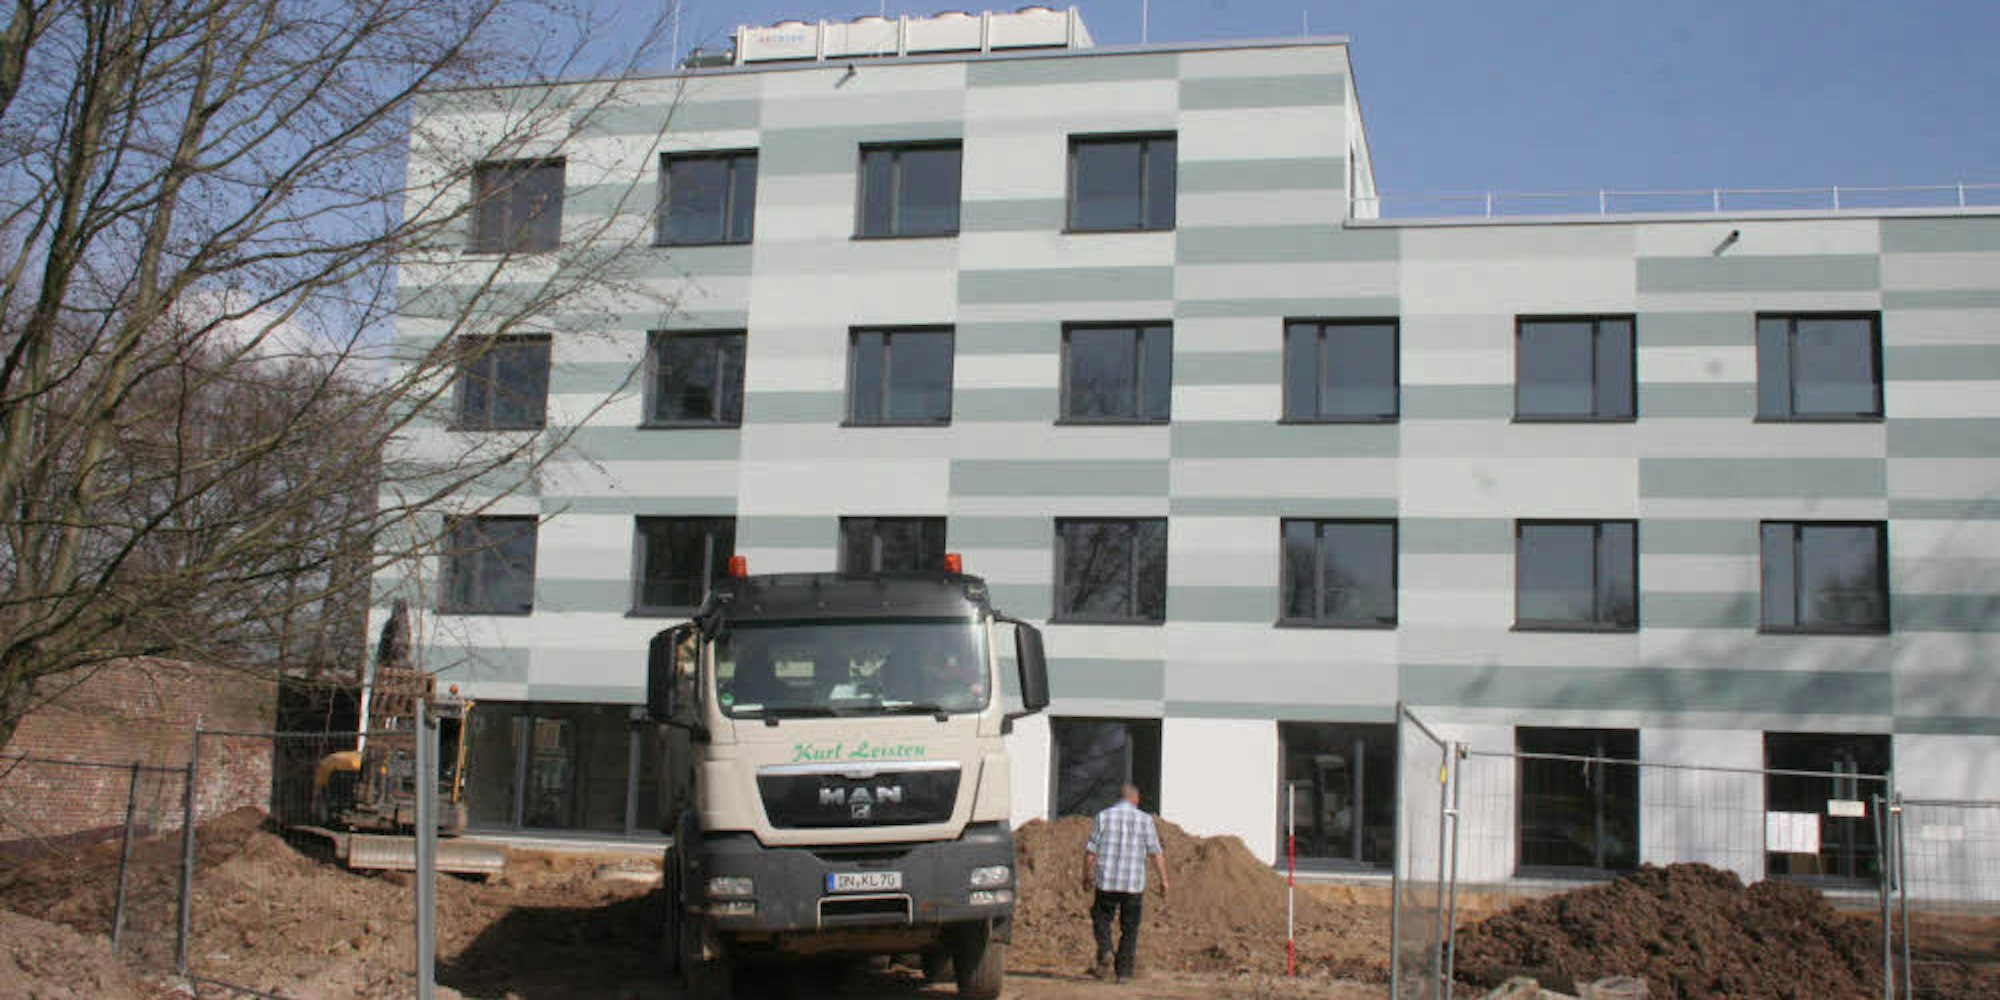 Nahezu fertig ist die 18 Millionen Euro teure psychiatrische Klinik in Bergheim. Das Haus soll im Mai in Betrieb gehen.